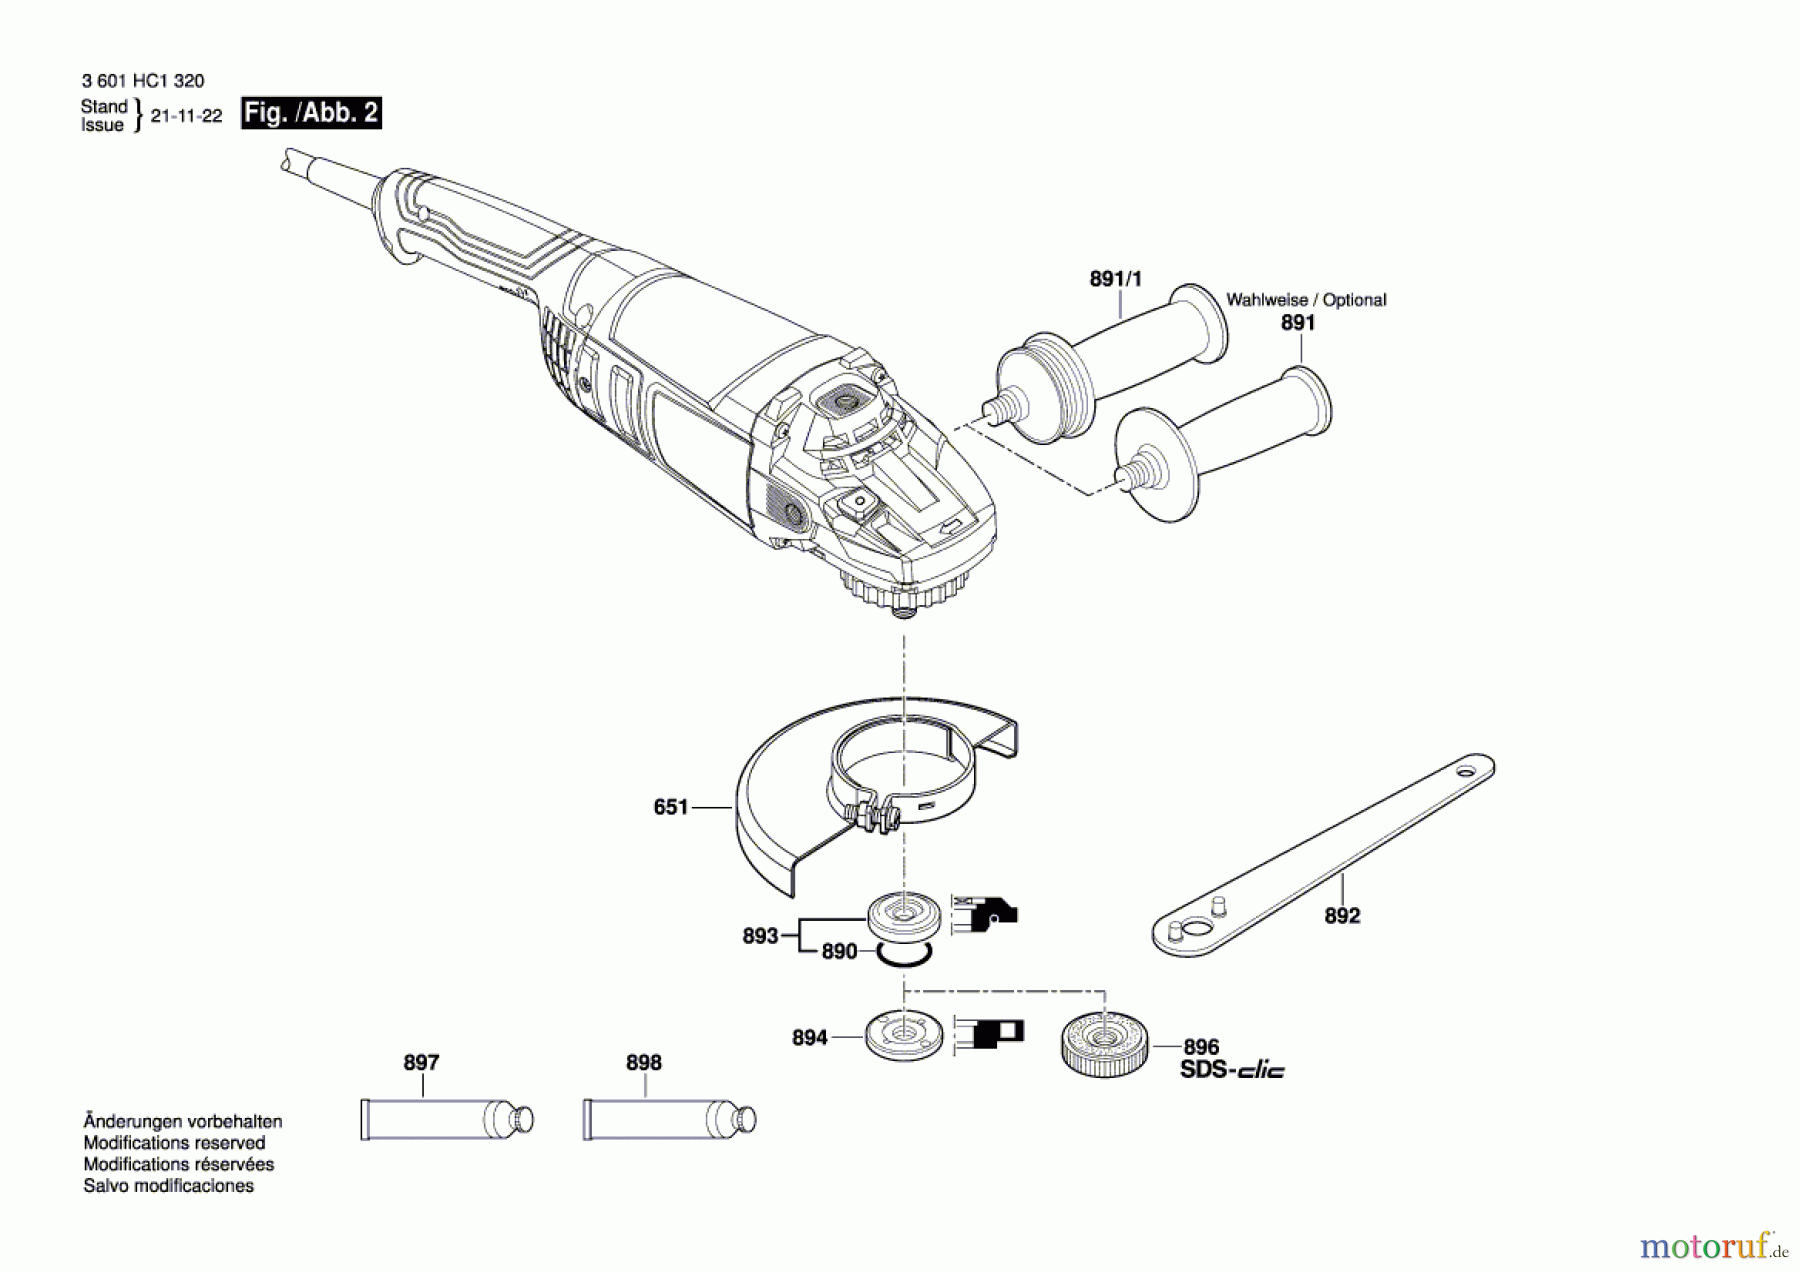  Bosch Werkzeug Winkelschleifer GWS 22-230 J Seite 2